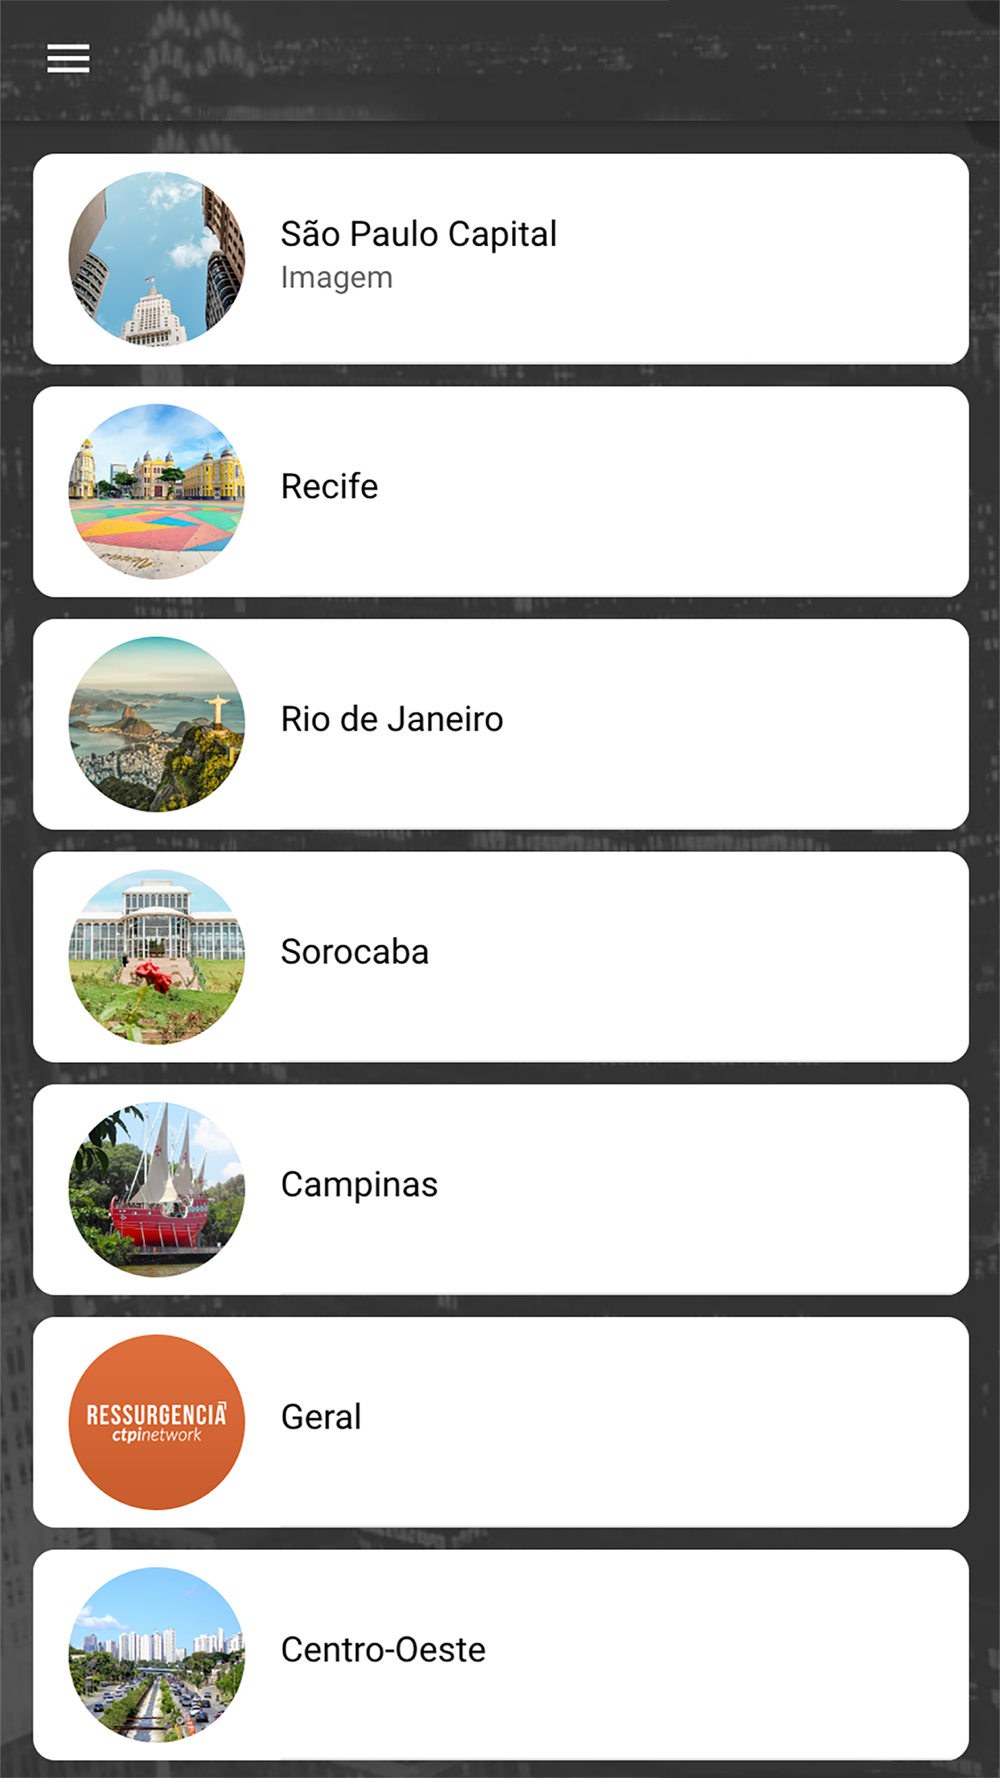 Neue apps in Campinas